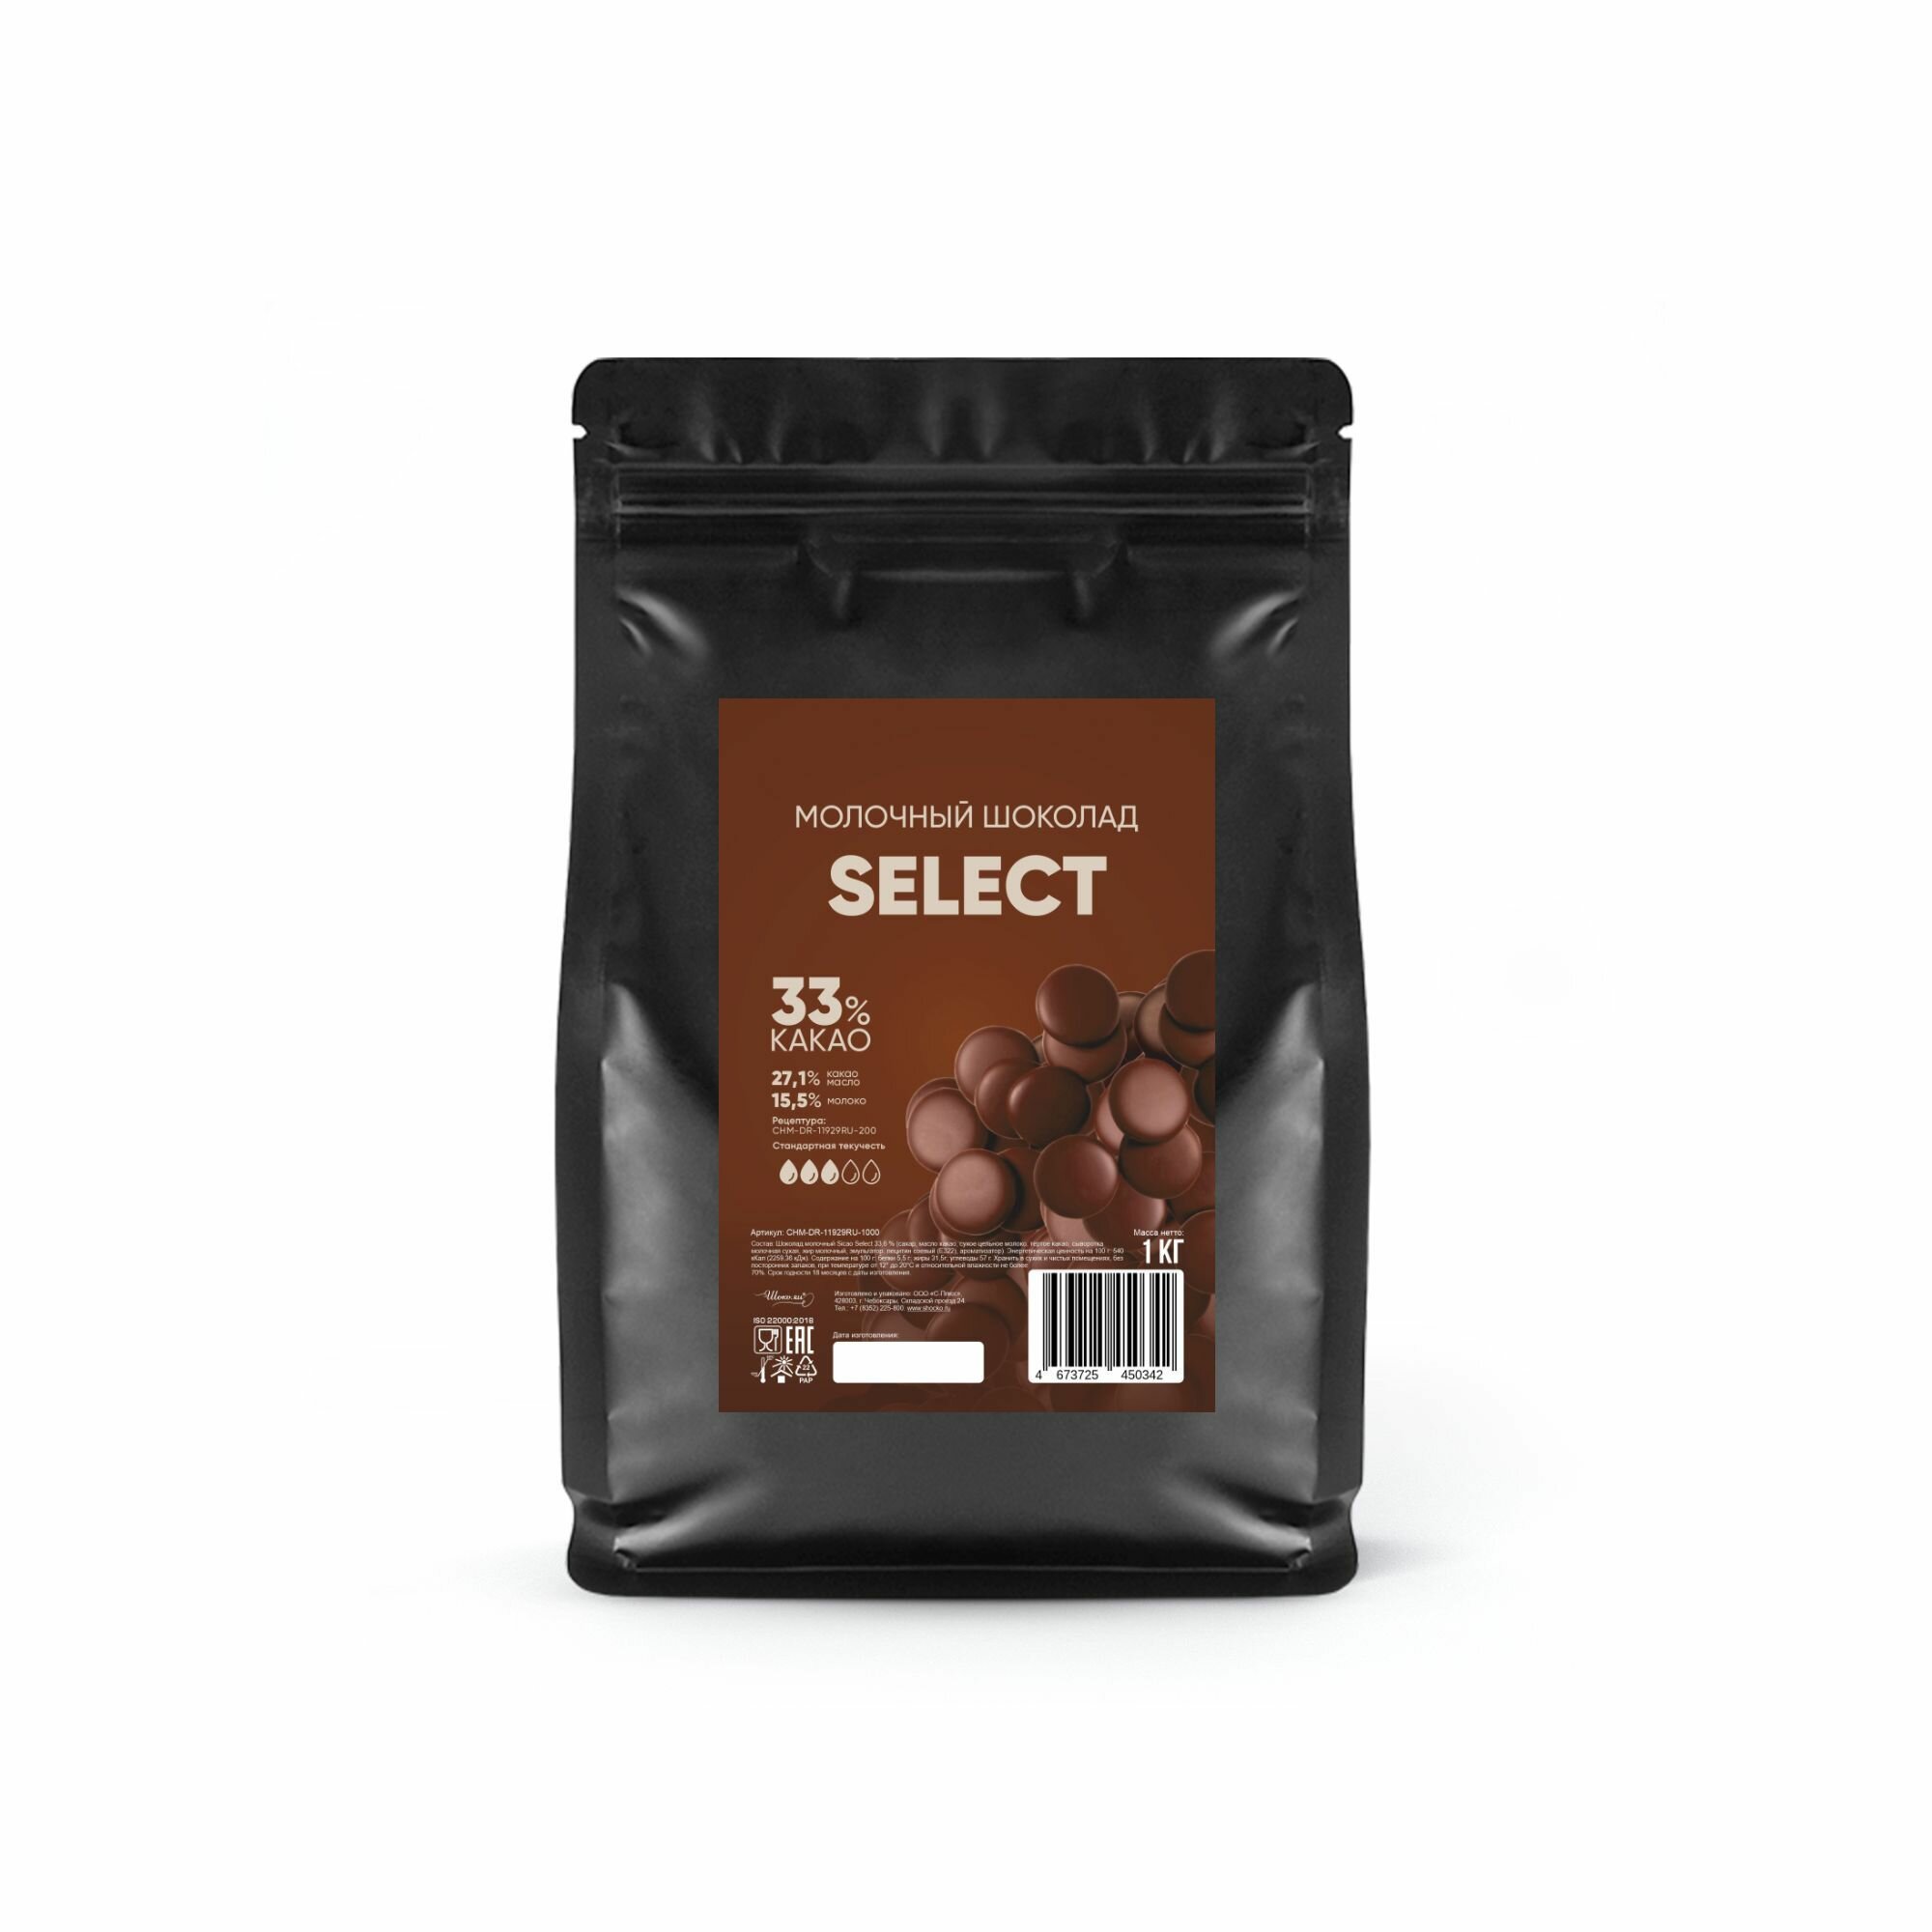 Шоколад молочный кондитерский Select 33,6% Sicao (Сикао) 1 кг